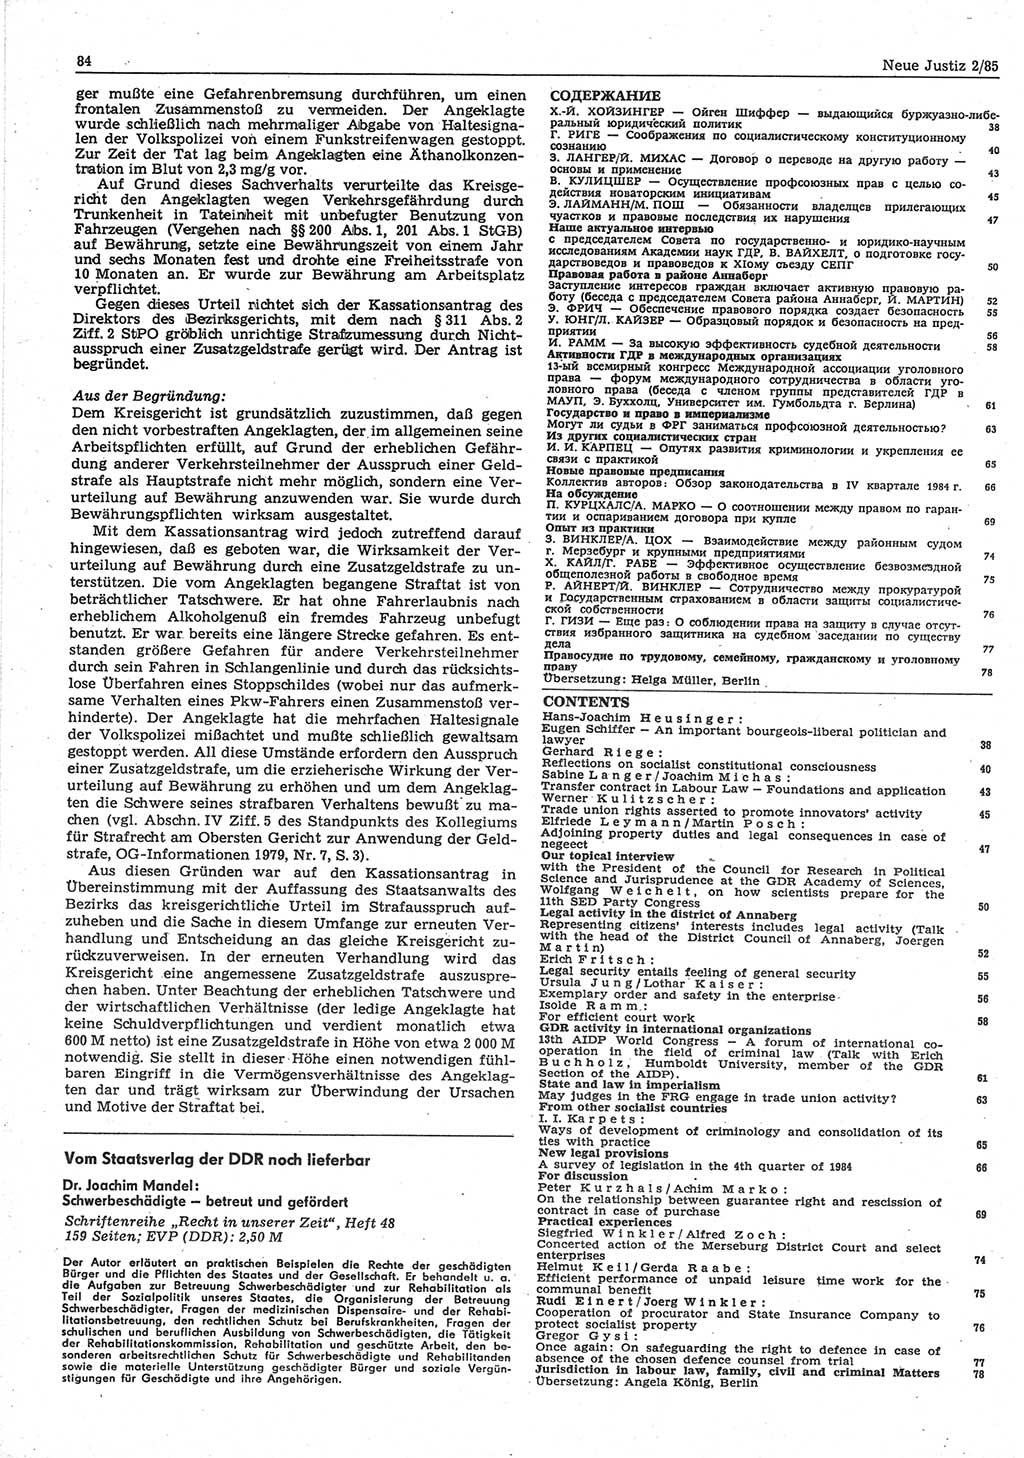 Neue Justiz (NJ), Zeitschrift für sozialistisches Recht und Gesetzlichkeit [Deutsche Demokratische Republik (DDR)], 39. Jahrgang 1985, Seite 84 (NJ DDR 1985, S. 84)